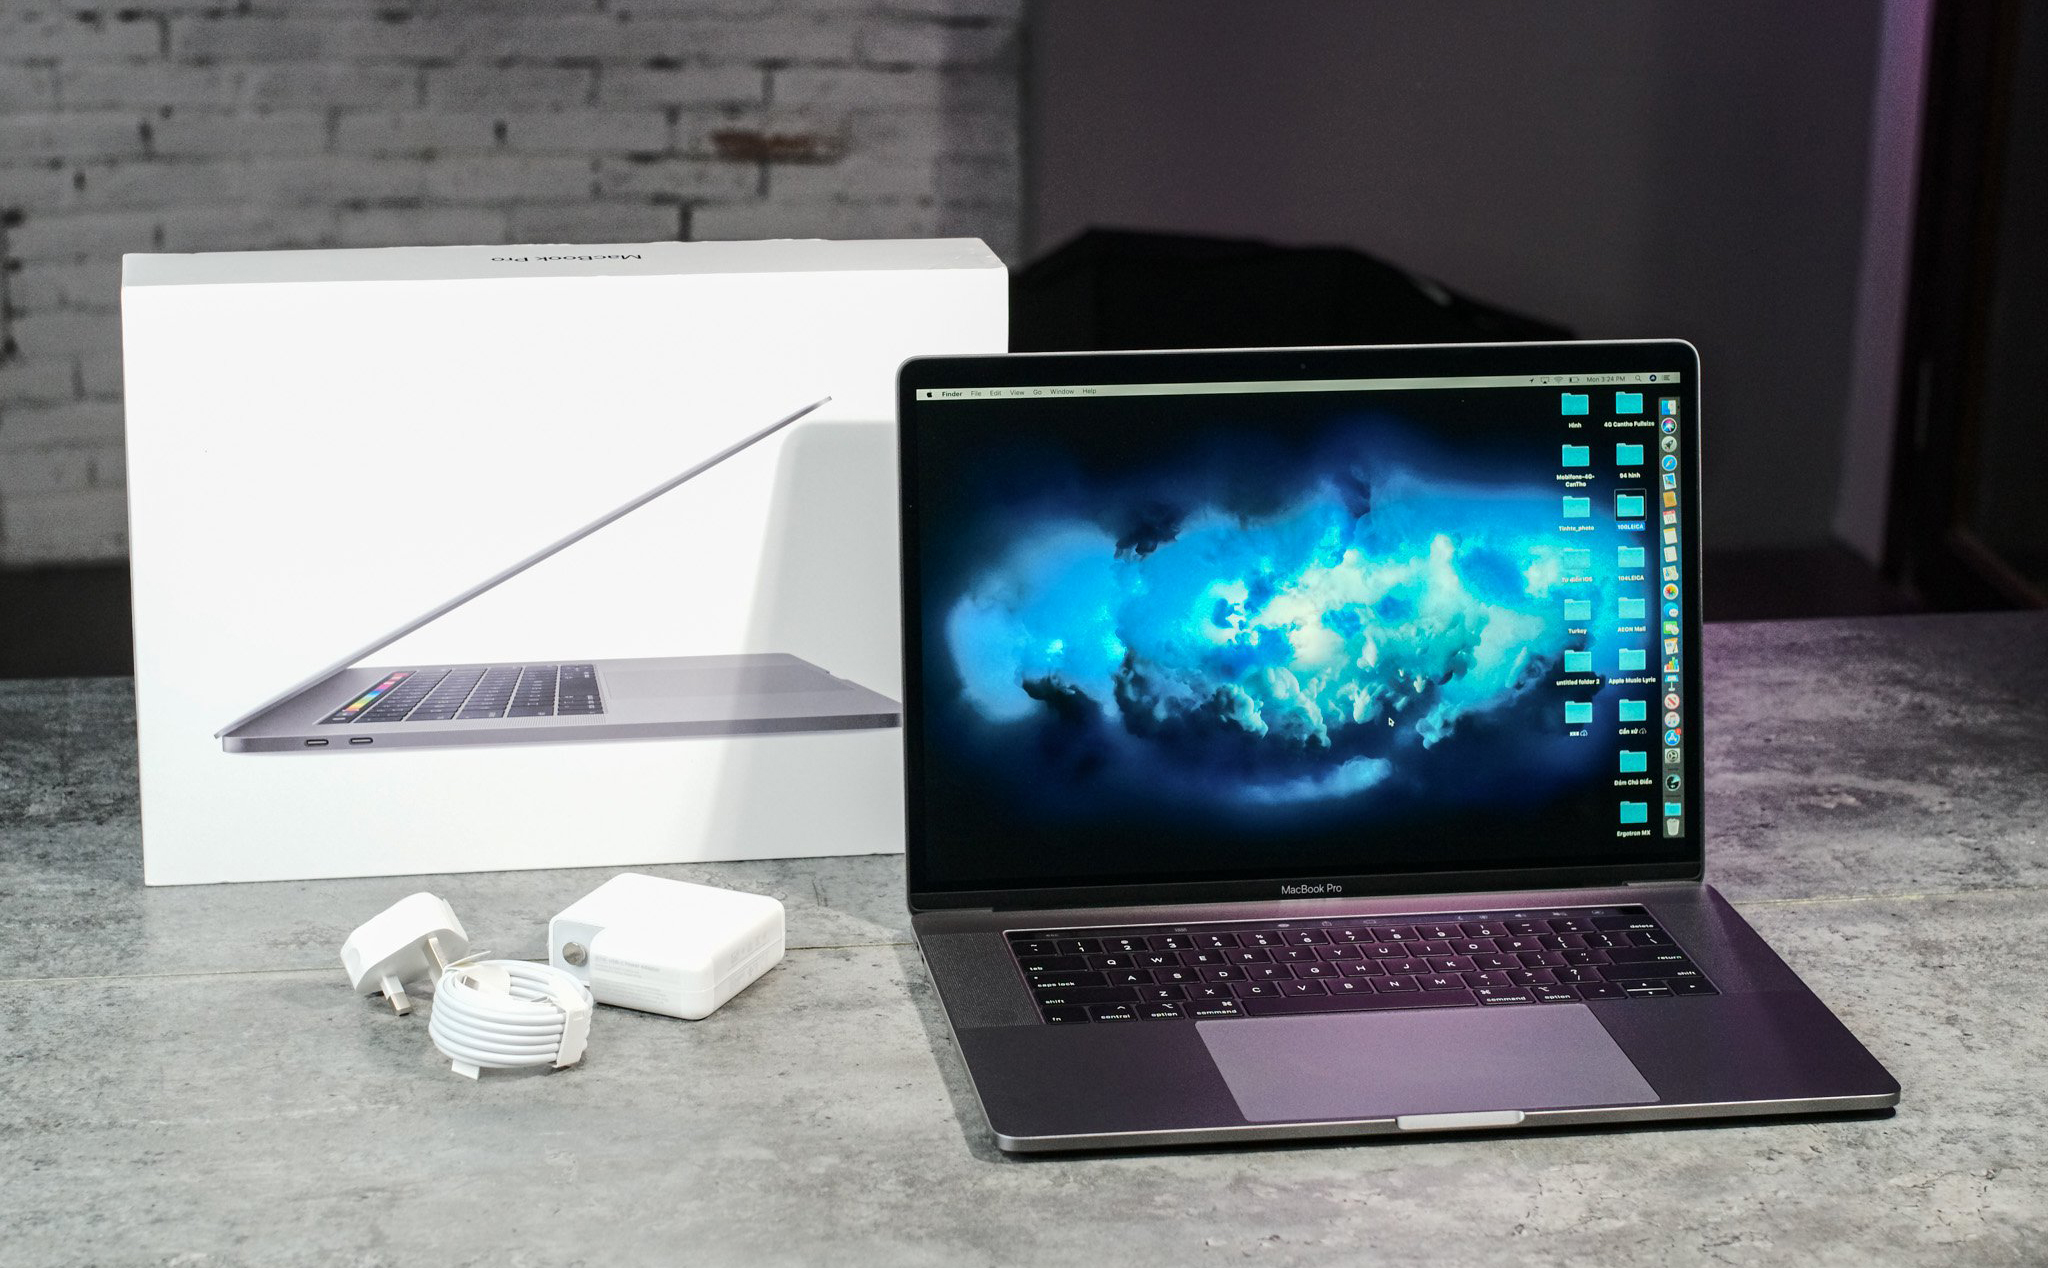 Đang sử dụng MacBook Pro 2018, liệu có cần nâng cấp lên đời 2019? Hoặc mua mới thì chọn đời nào?